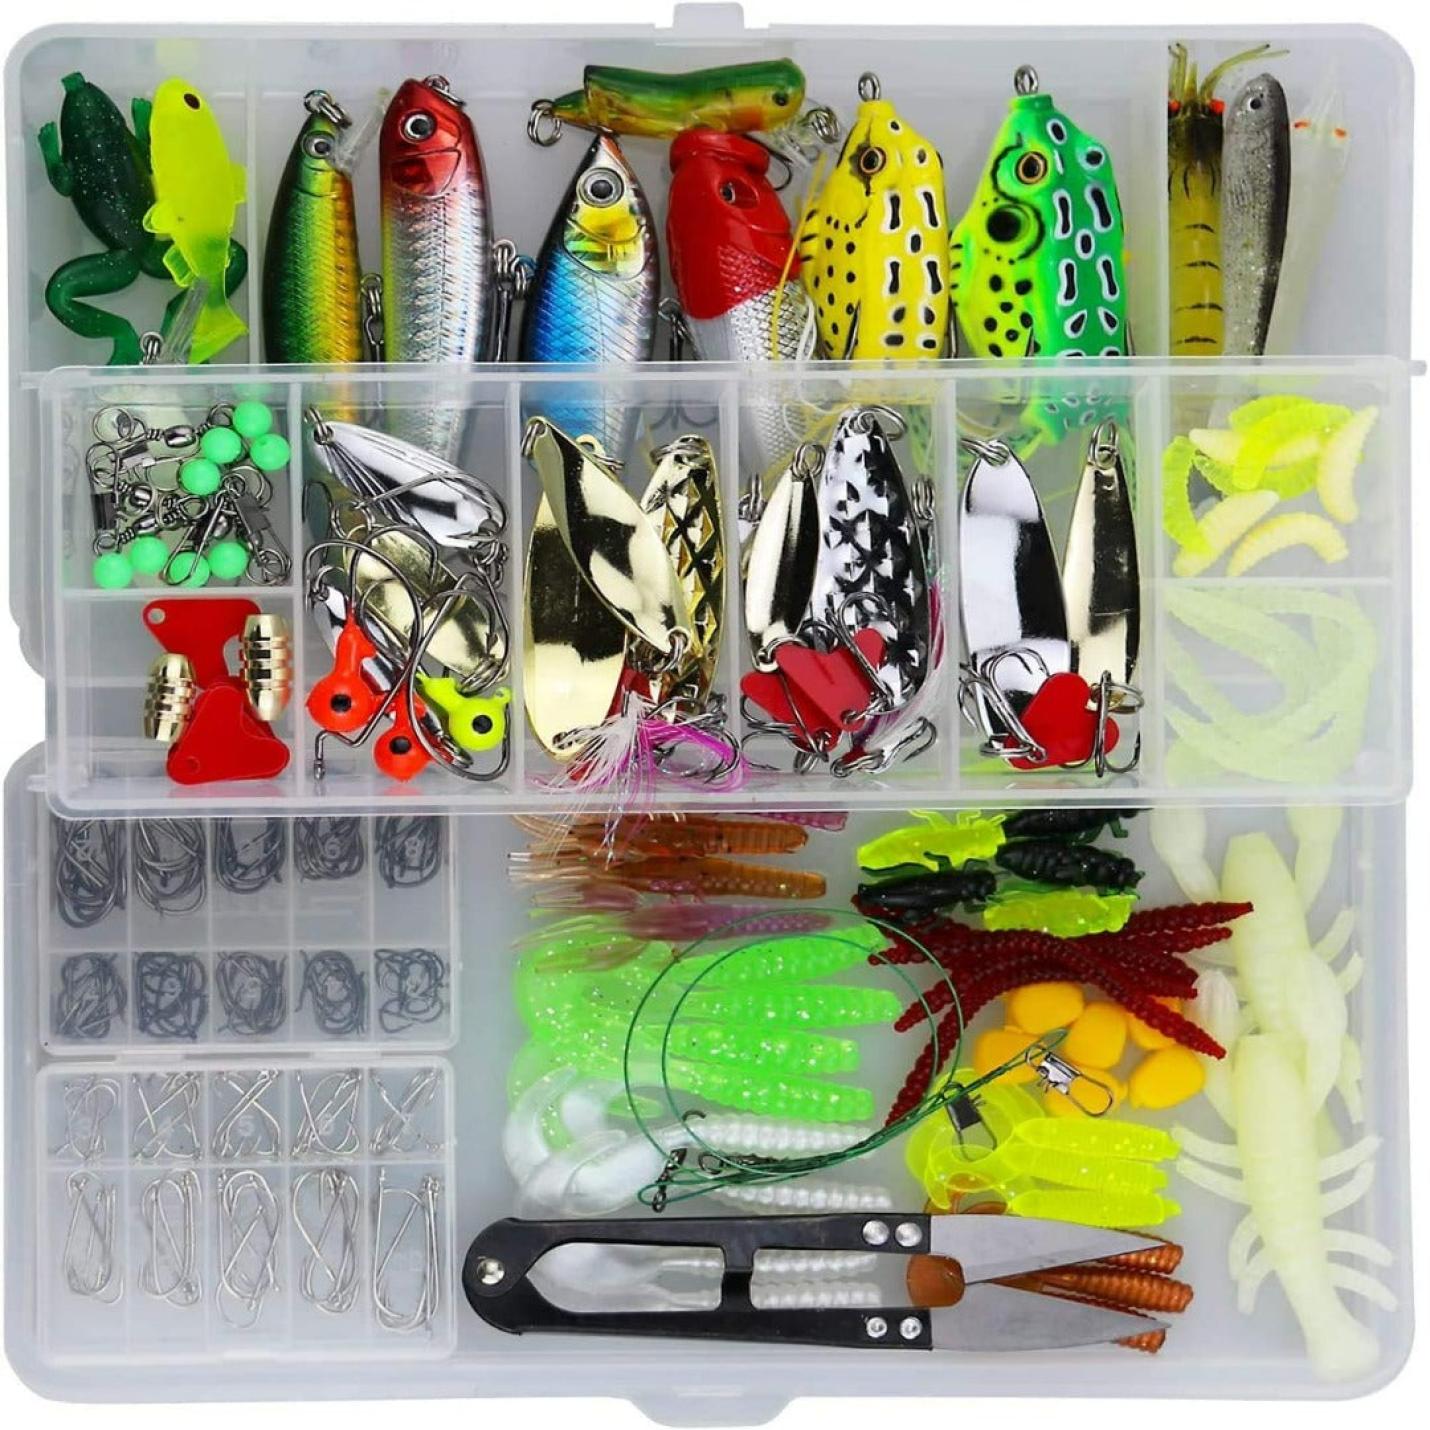 "235 stuks vissen lokken kit met verschillende soorten aas, inclusief crank aas, spinner aas, zachte plastic wormen, lokken vissen jigs en haken